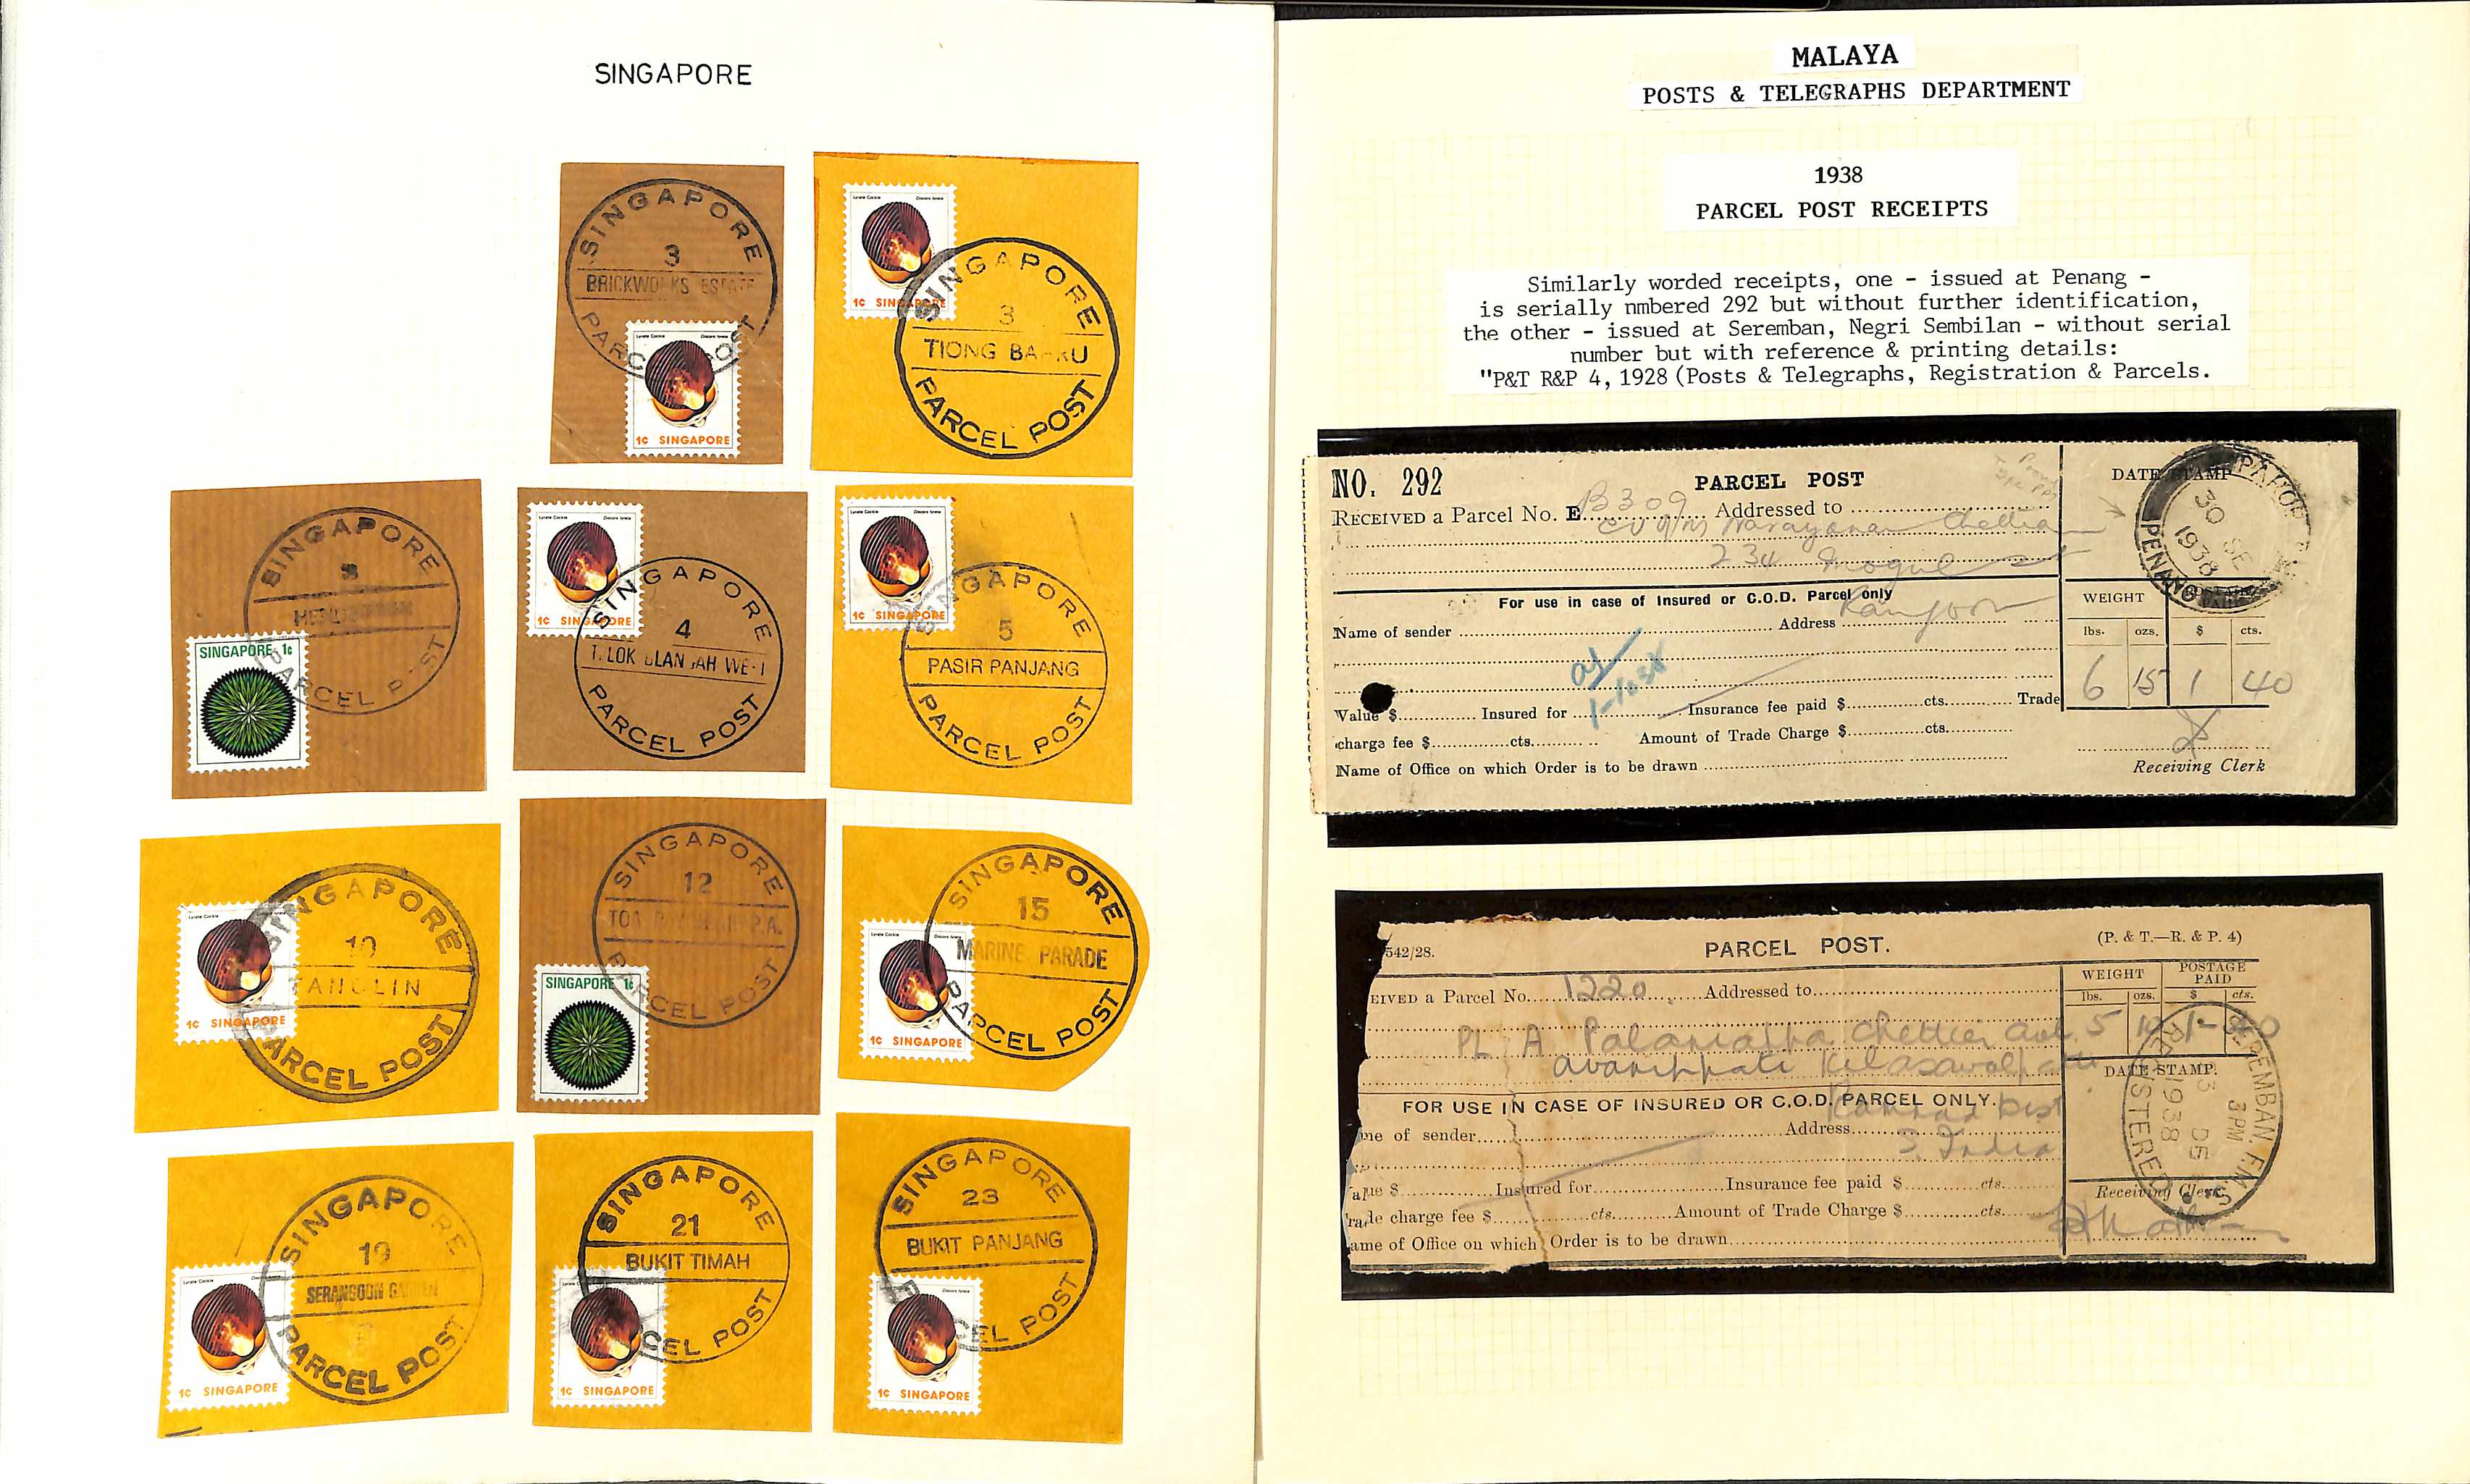 Parcel Post. c.1900-80 Parcel labels, pieces cut from parcels, receipts, customs forms, parcel - Image 4 of 5